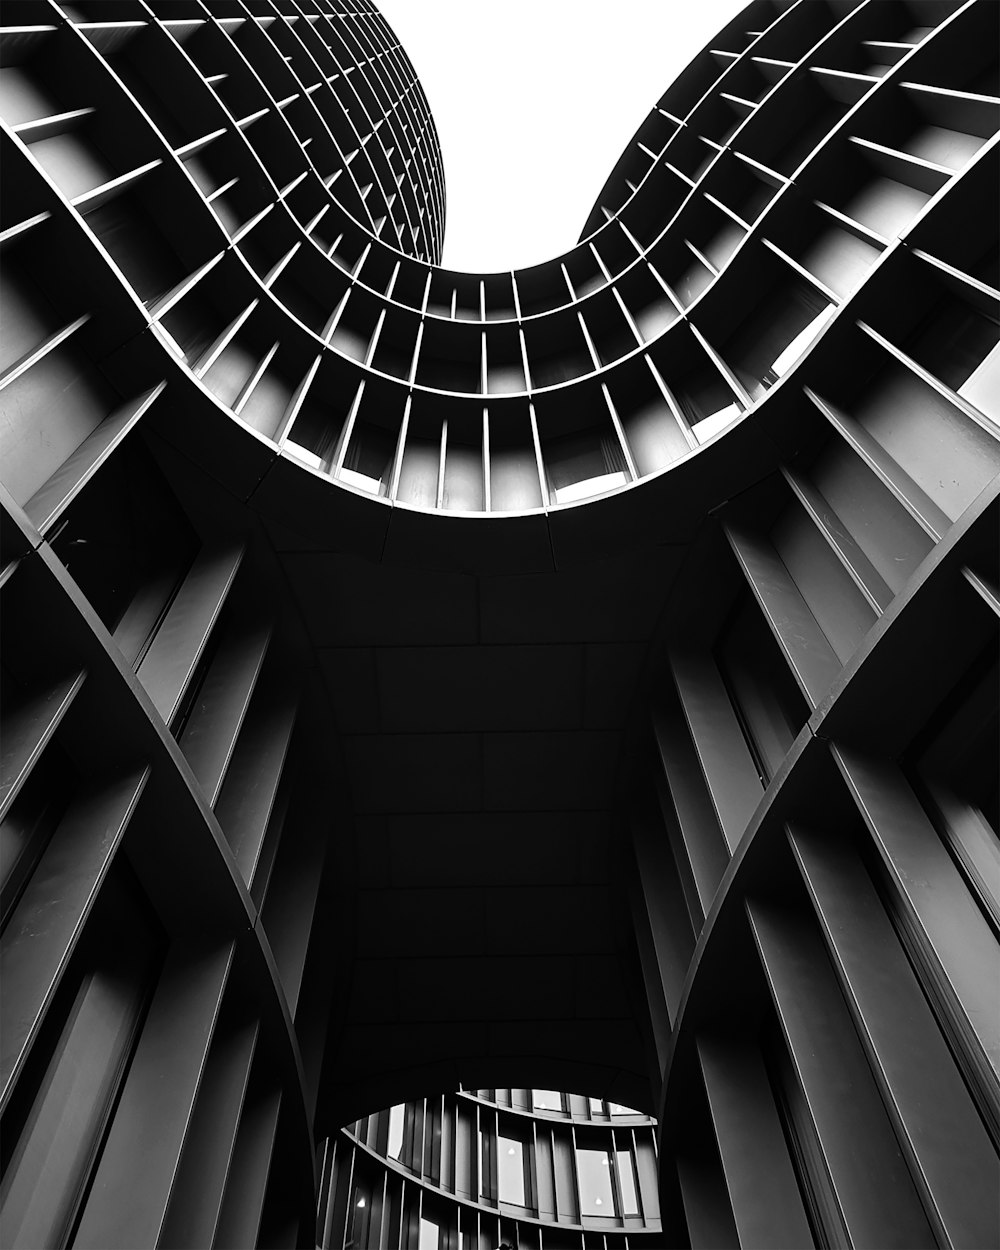 Una foto en blanco y negro de dos edificios altos